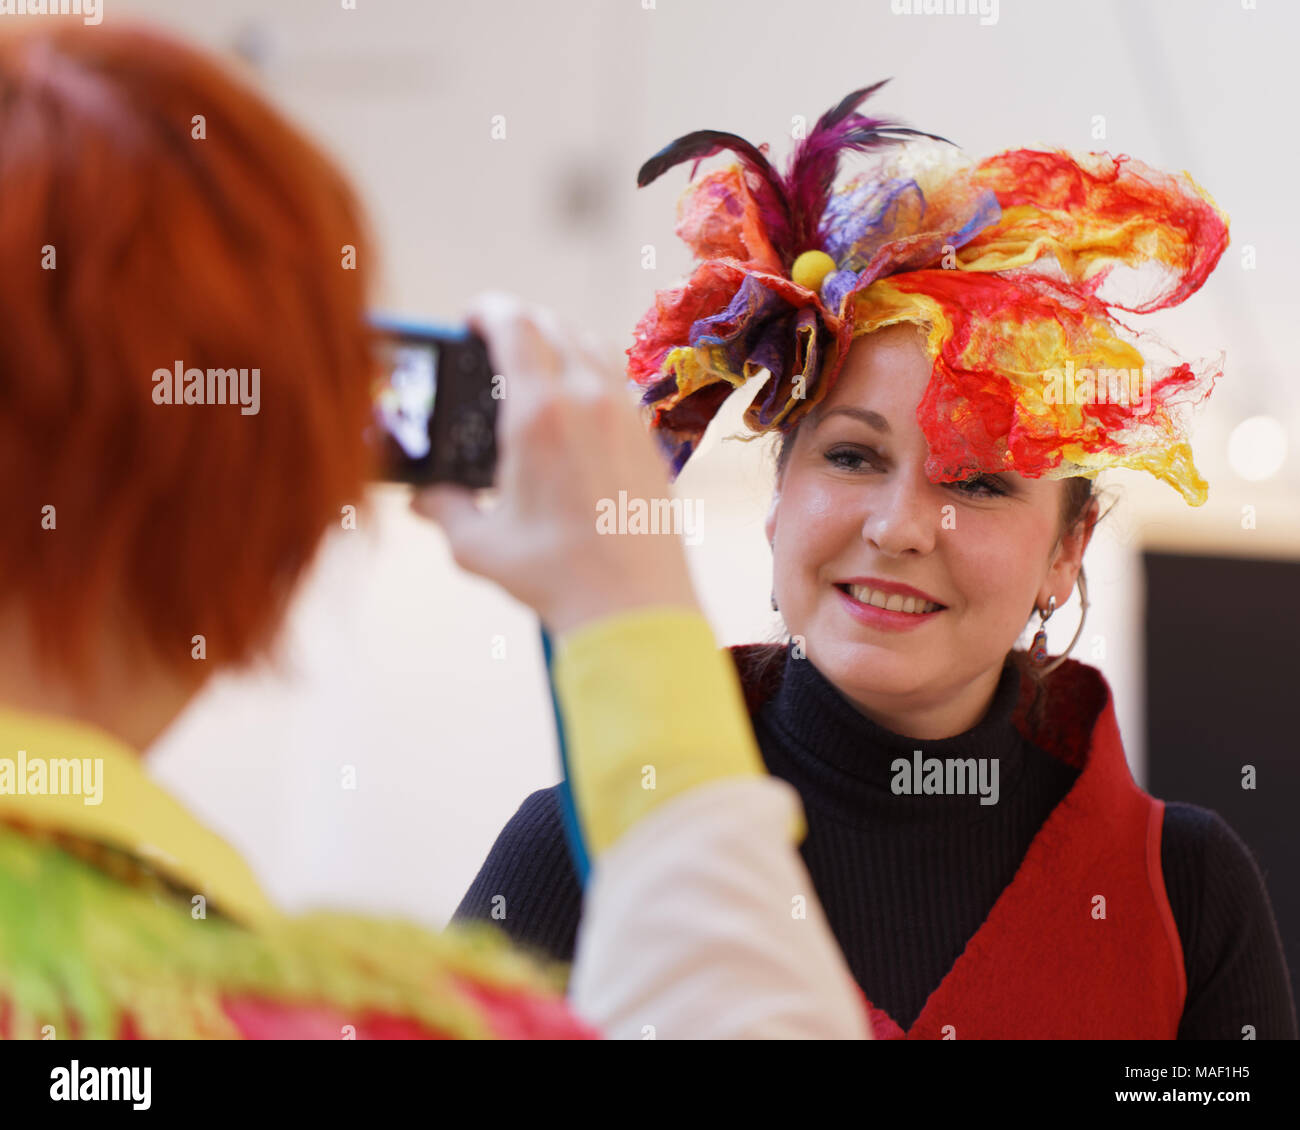 Saint-pétersbourg, Russie - le 22 mars 2018 : les chapeaux fashion show de l'exposition au cours de TeddyFun 2018 Bazar artisanal. L'exposition est organisée de façon saisonnière tr Banque D'Images